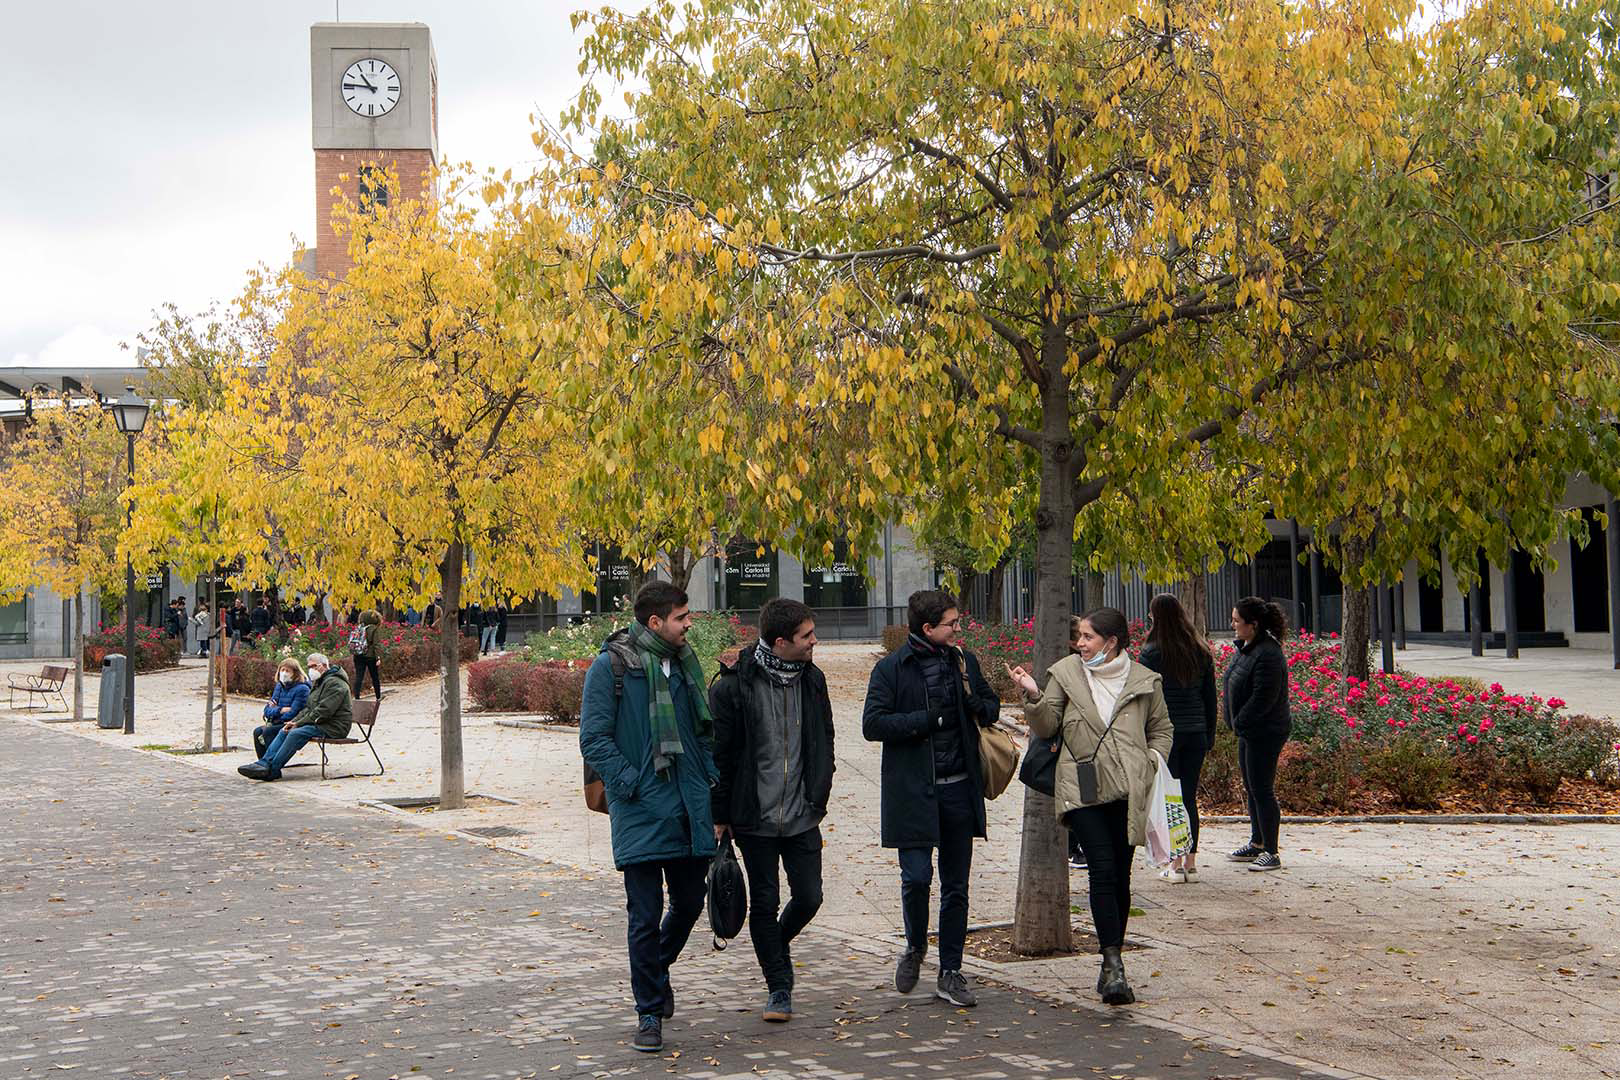 Cuatro jóvenes, tres chicos y una chica, caminan charlando animadamente por un paseo de árboles a la salida de la Universidad